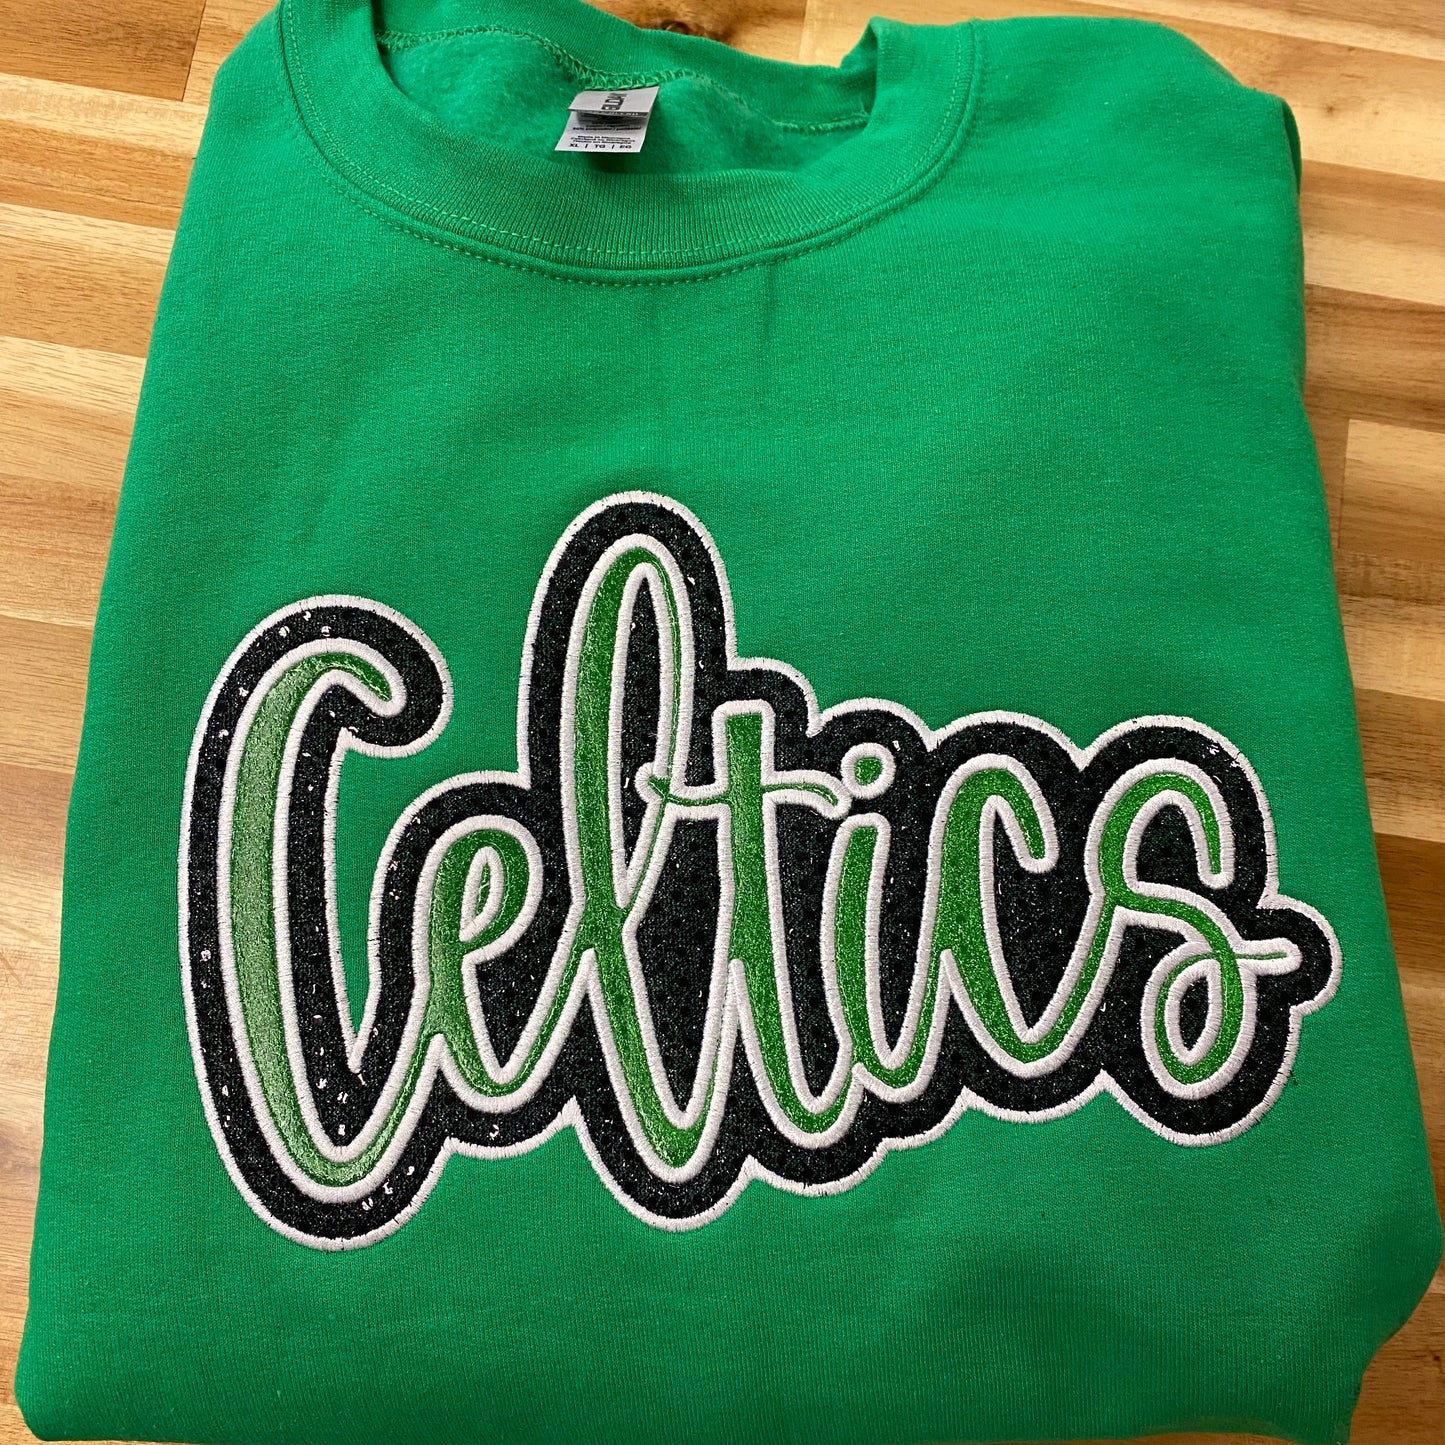 **Preorder**Celtics Applique Crewneck